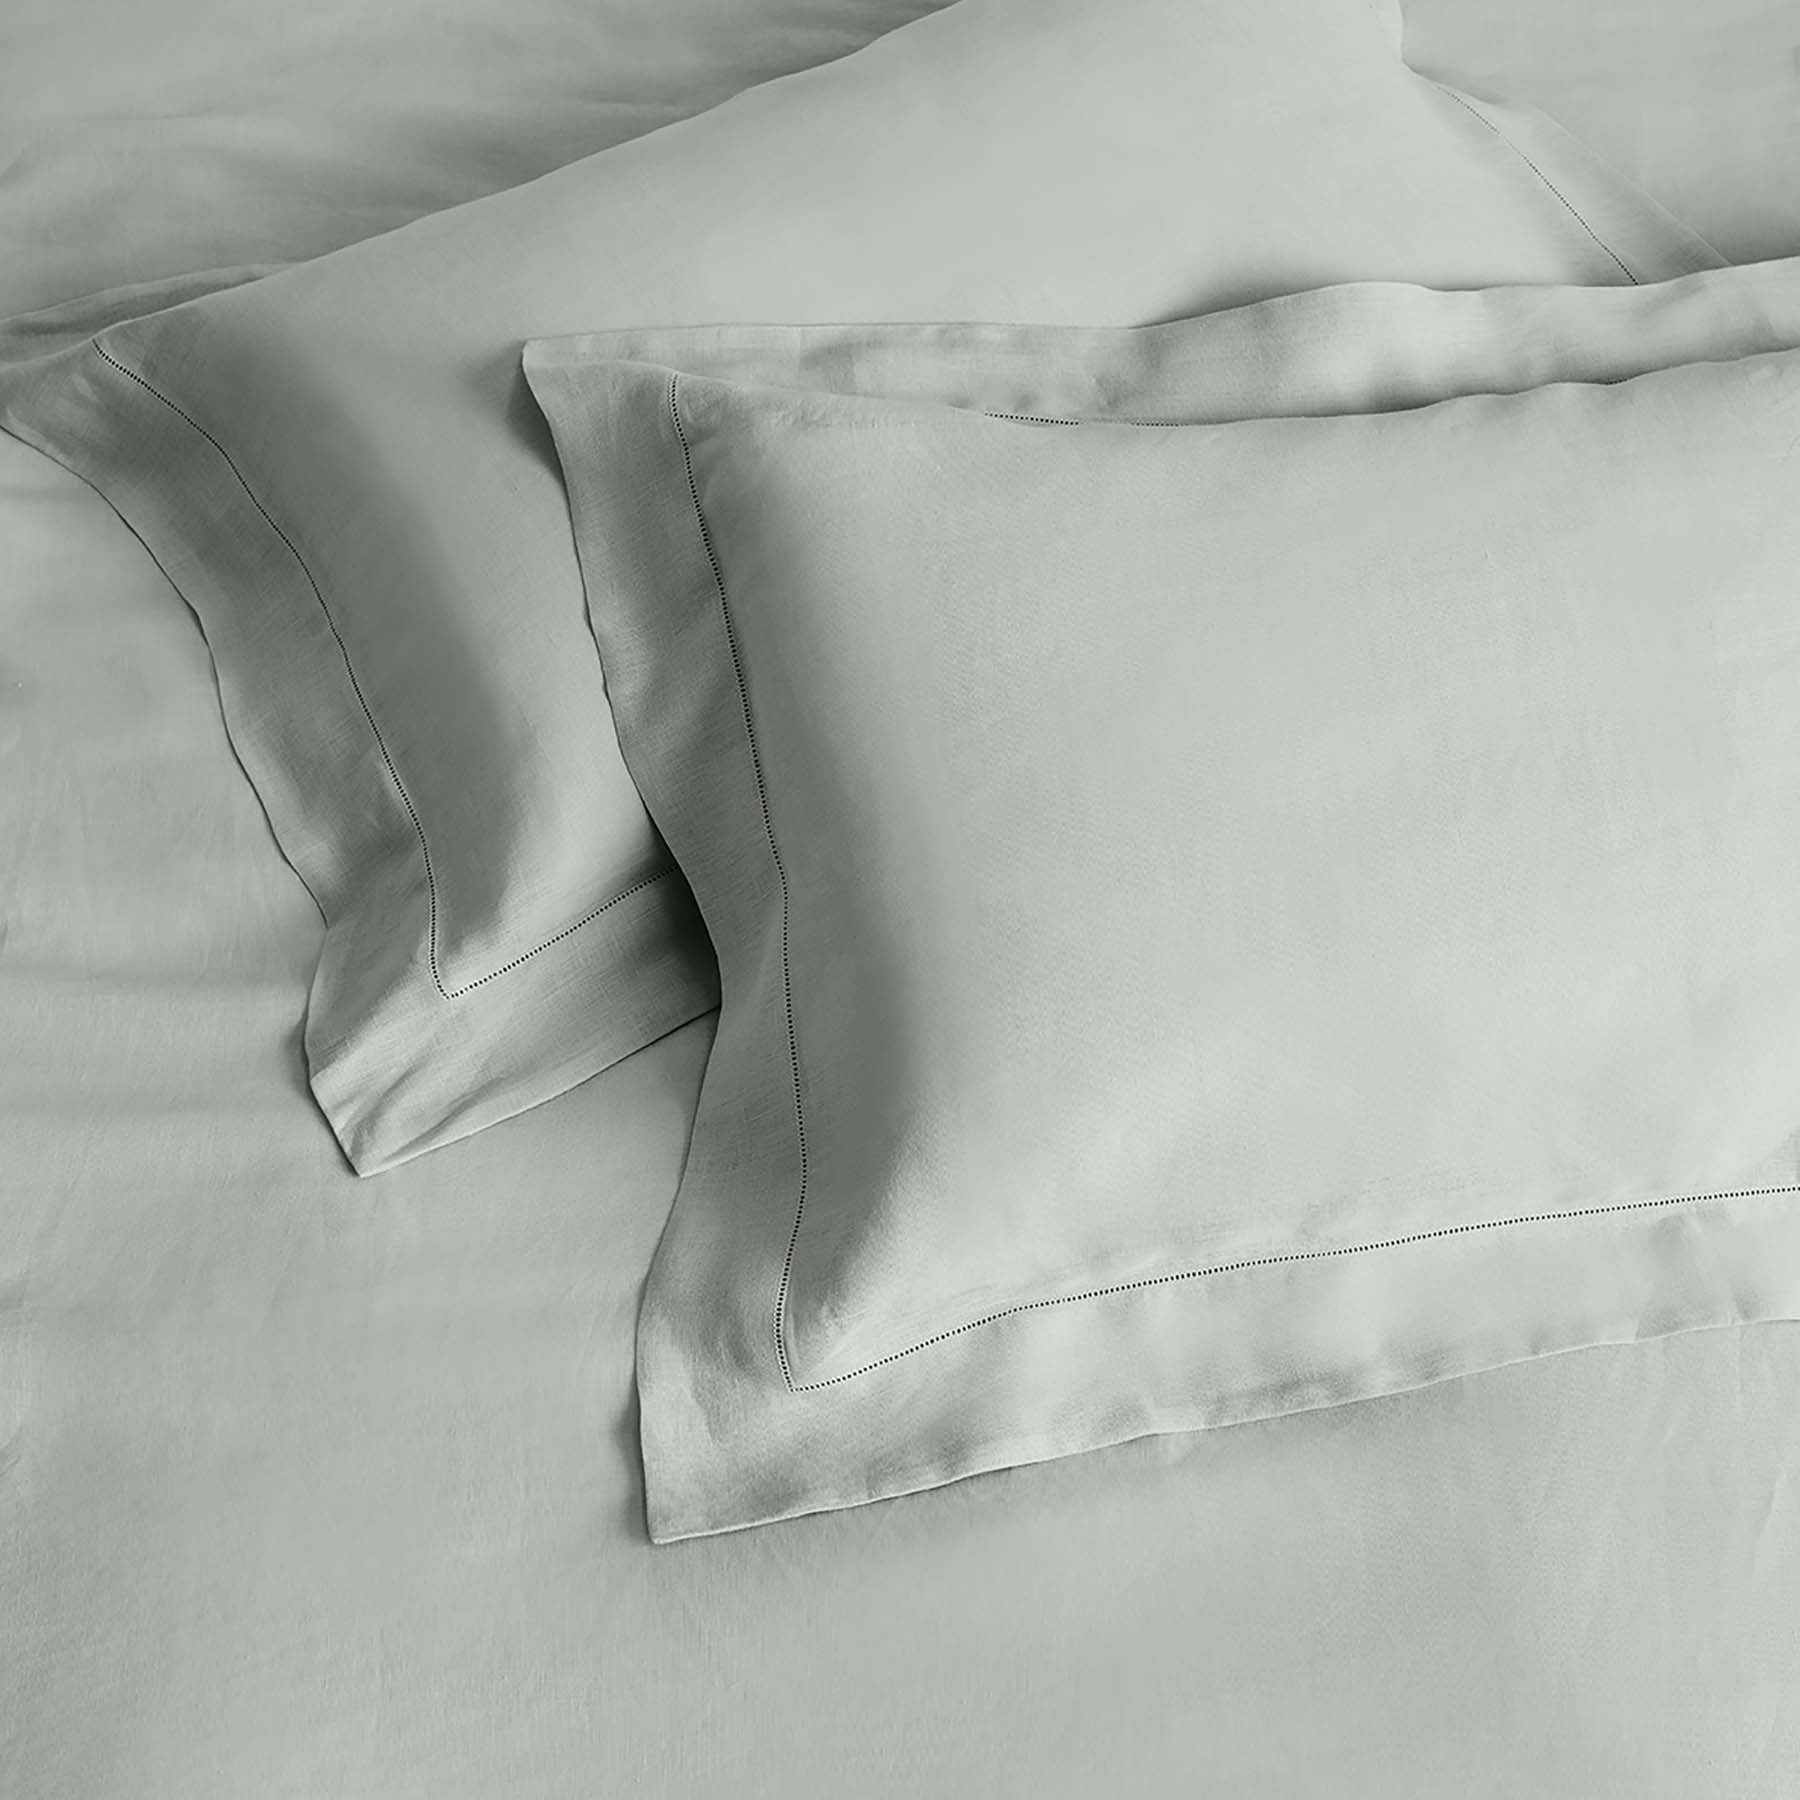 Kings & Queens Vintage Linen Duvet Cover Set in Tin Pillowcase Sham Set